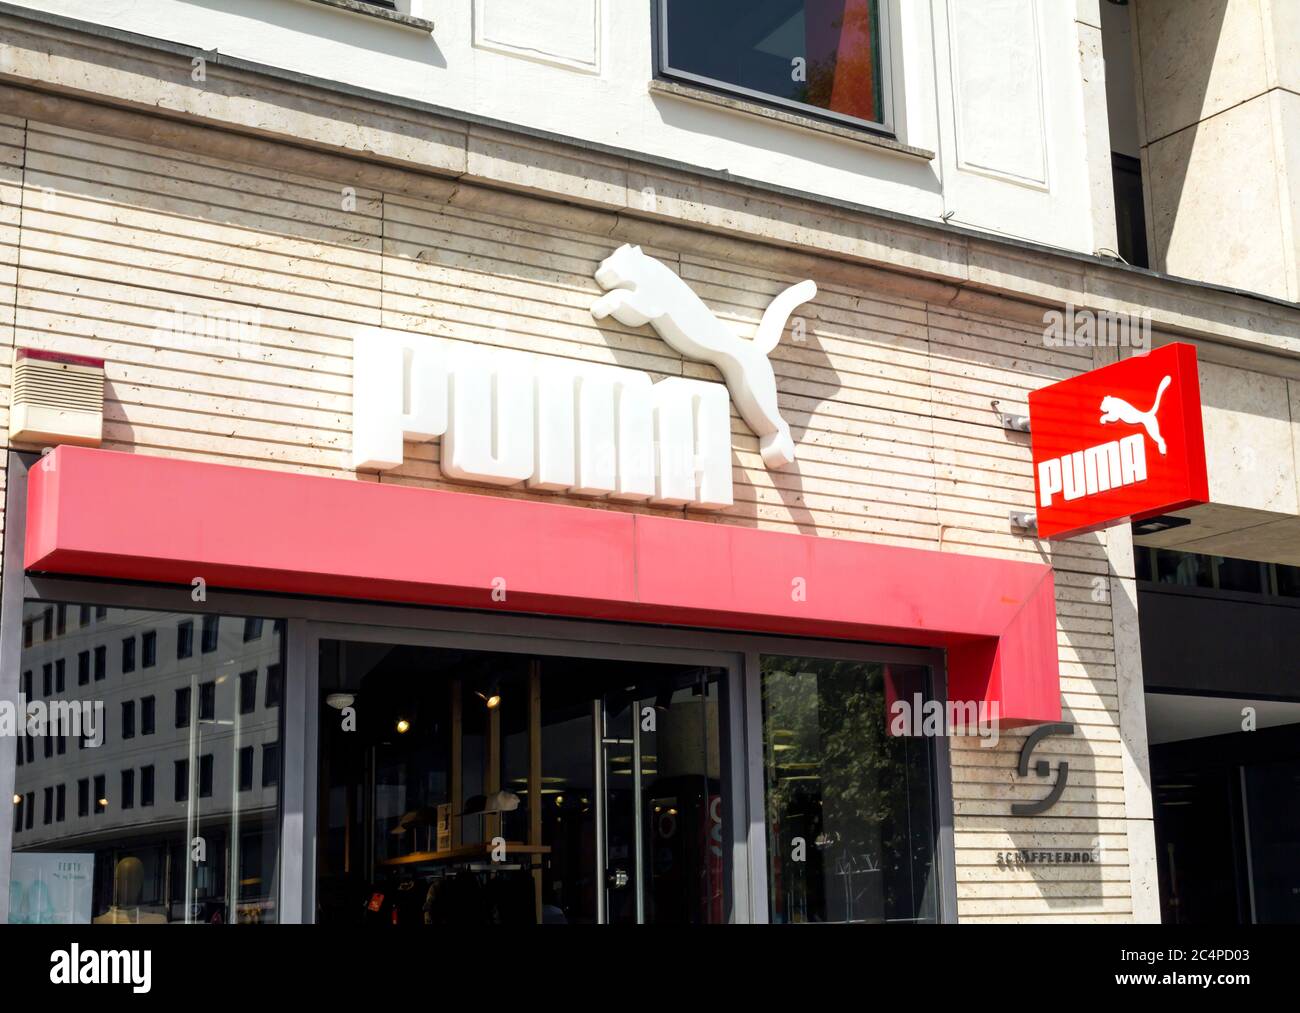 München, Deutschland : Puma Outlet Store. Puma ist ein großes deutsches  multinationales Unternehmen, das sportliche, legere Schuhe und  Sportbekleidung mit Sitz in i herstellt Stockfotografie - Alamy